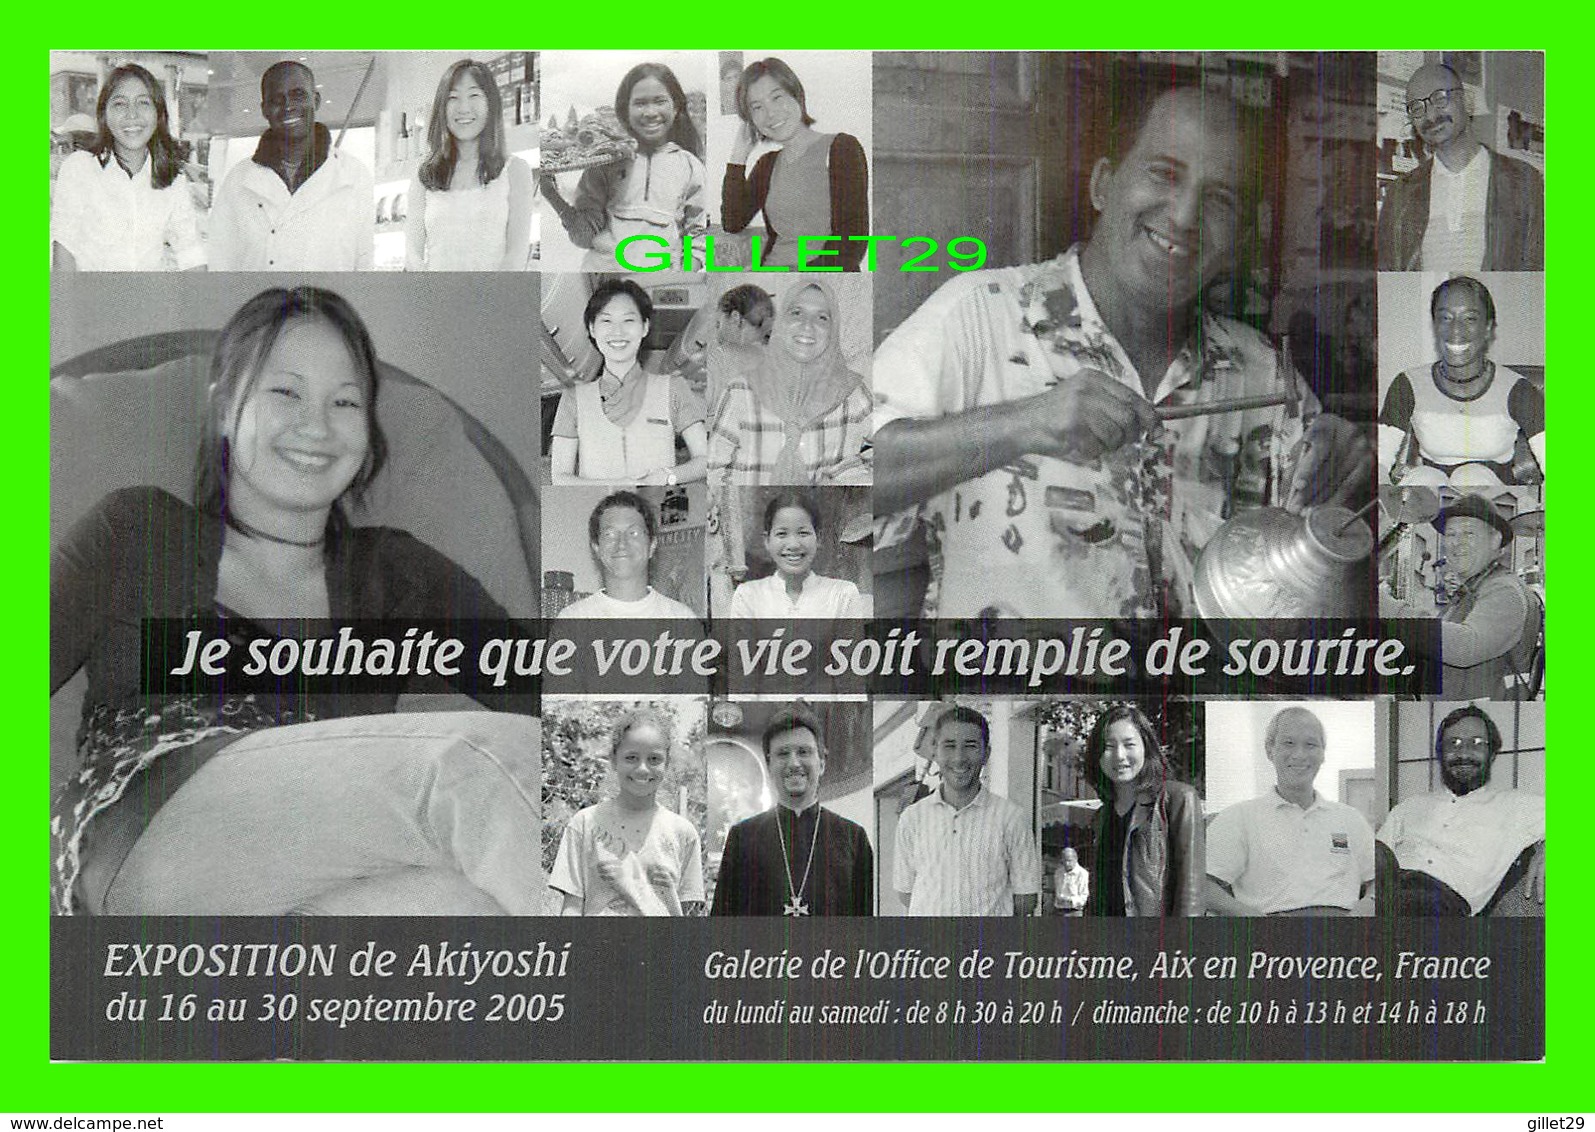 ADVERTISING, PUBLICITÉ - GALERIE DE L'OFFICE DE TOURISME, AIX EN PROVENCE - EXPOSITION DE AKIYOSHI EN 2005 - - Advertising